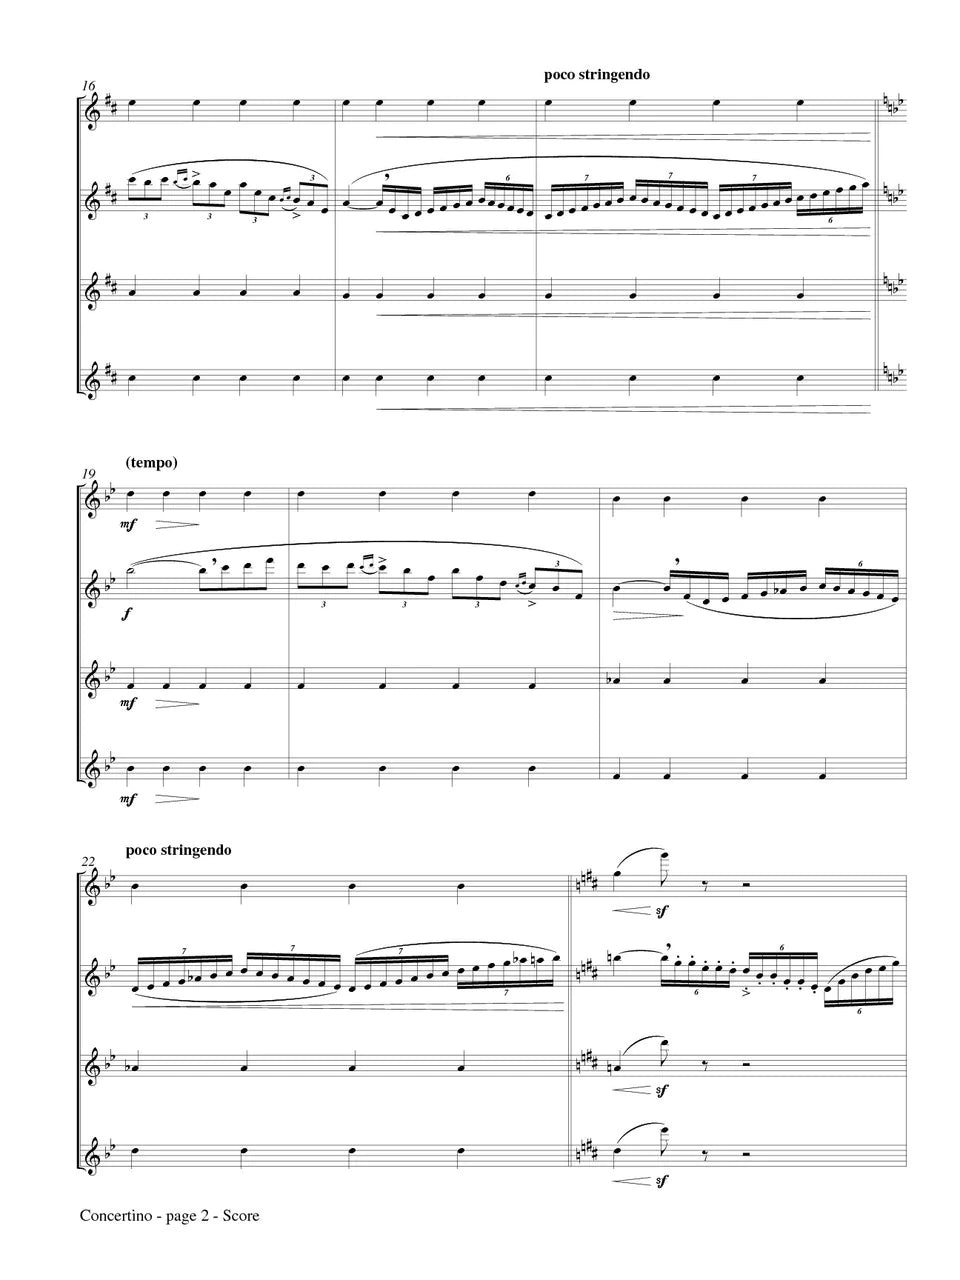 Chaminade (arr. Rose) - Concertino (Flute Quartet)